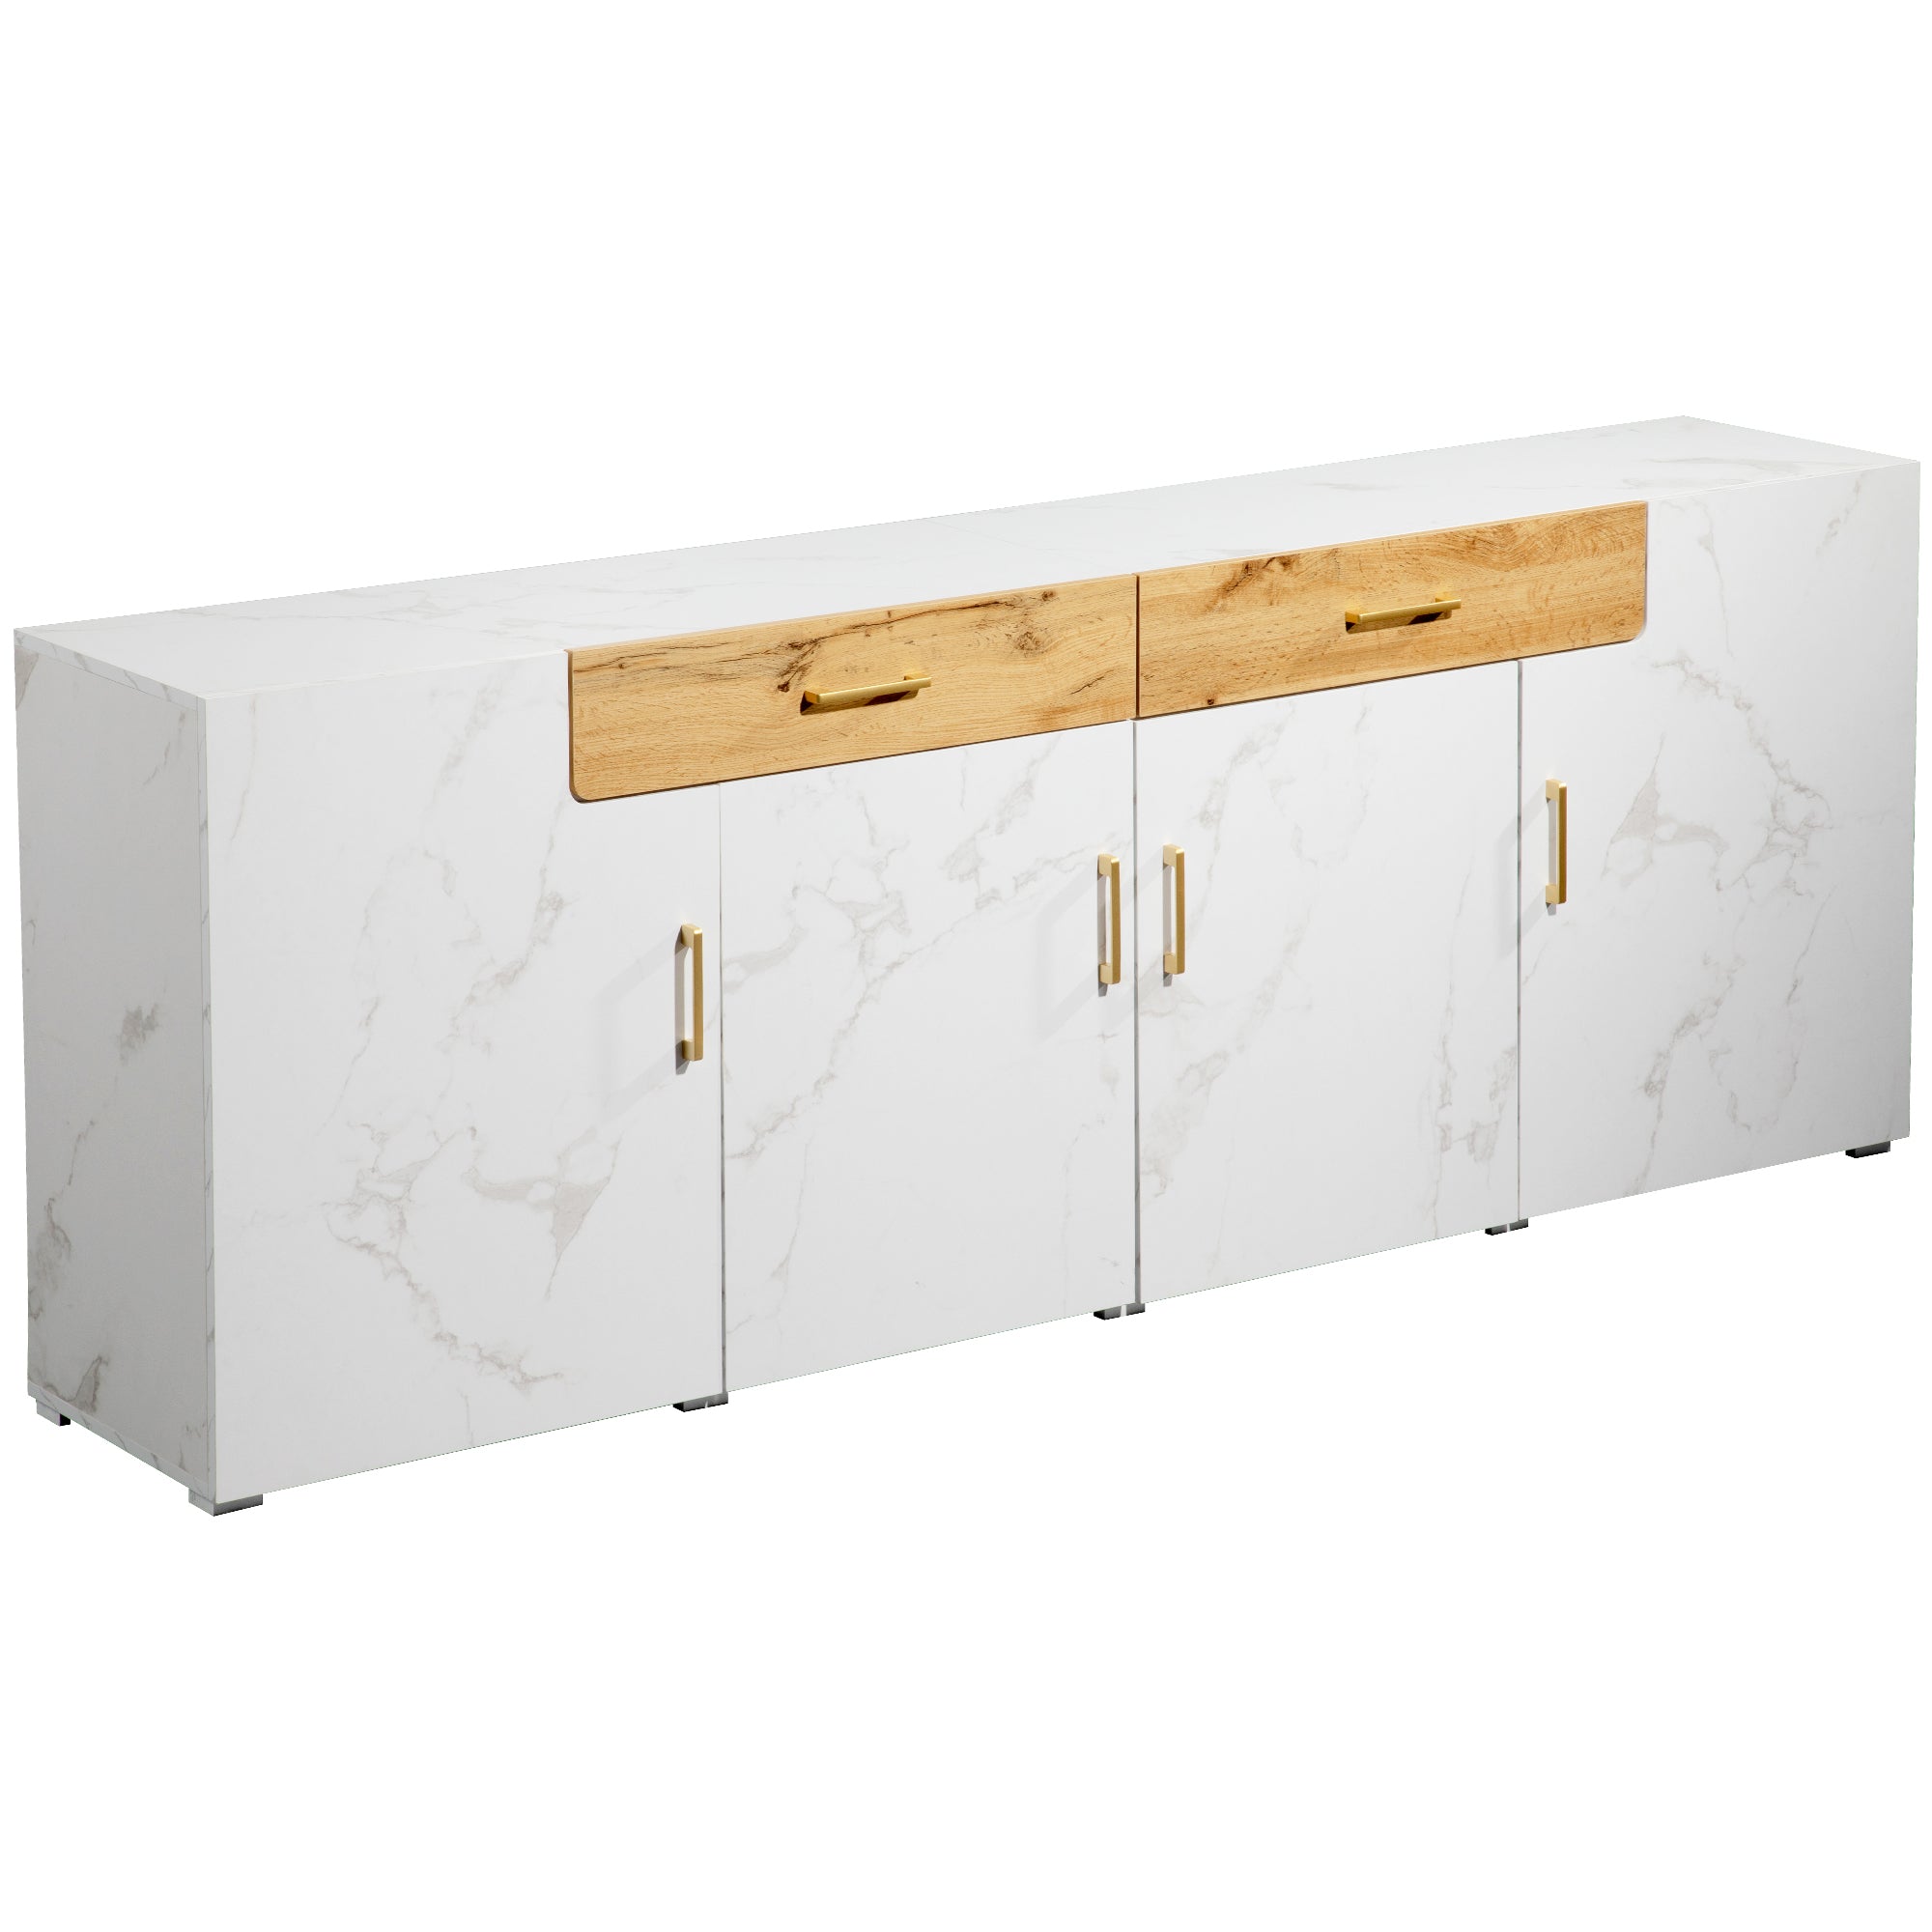 okwish Sideboard, Küchenschrank, Aufbewahrungsschrank, Kommode mit 4 Türen, 2 Schubladen, Buffet (208 x 39,5 x 80 cm)